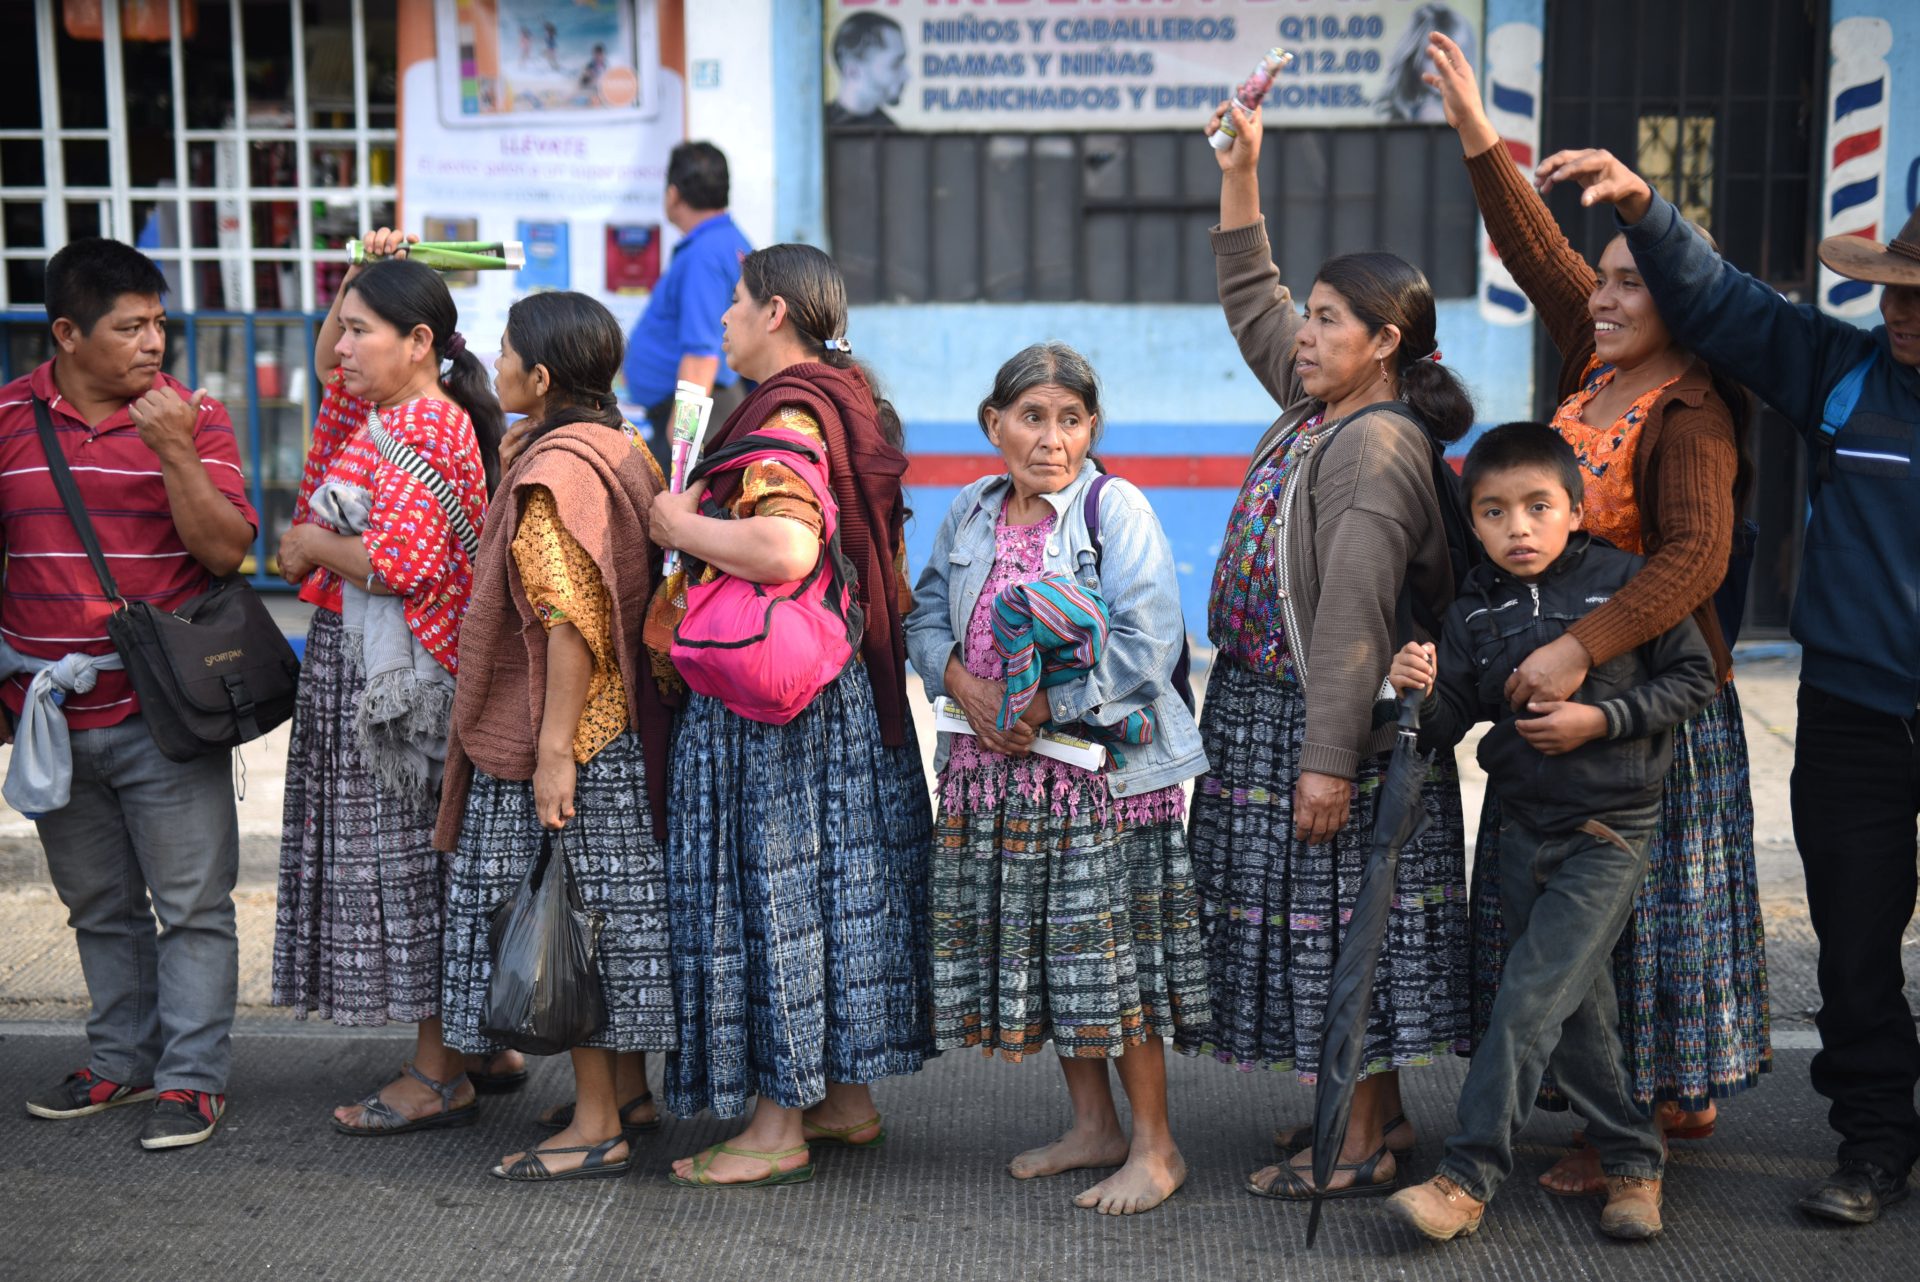 8 PROTESTAN EN GUATEMALA CONTRA HIDROELÉCTRICAS QUE CONSTRUYE FLORENTINO PÉREZ